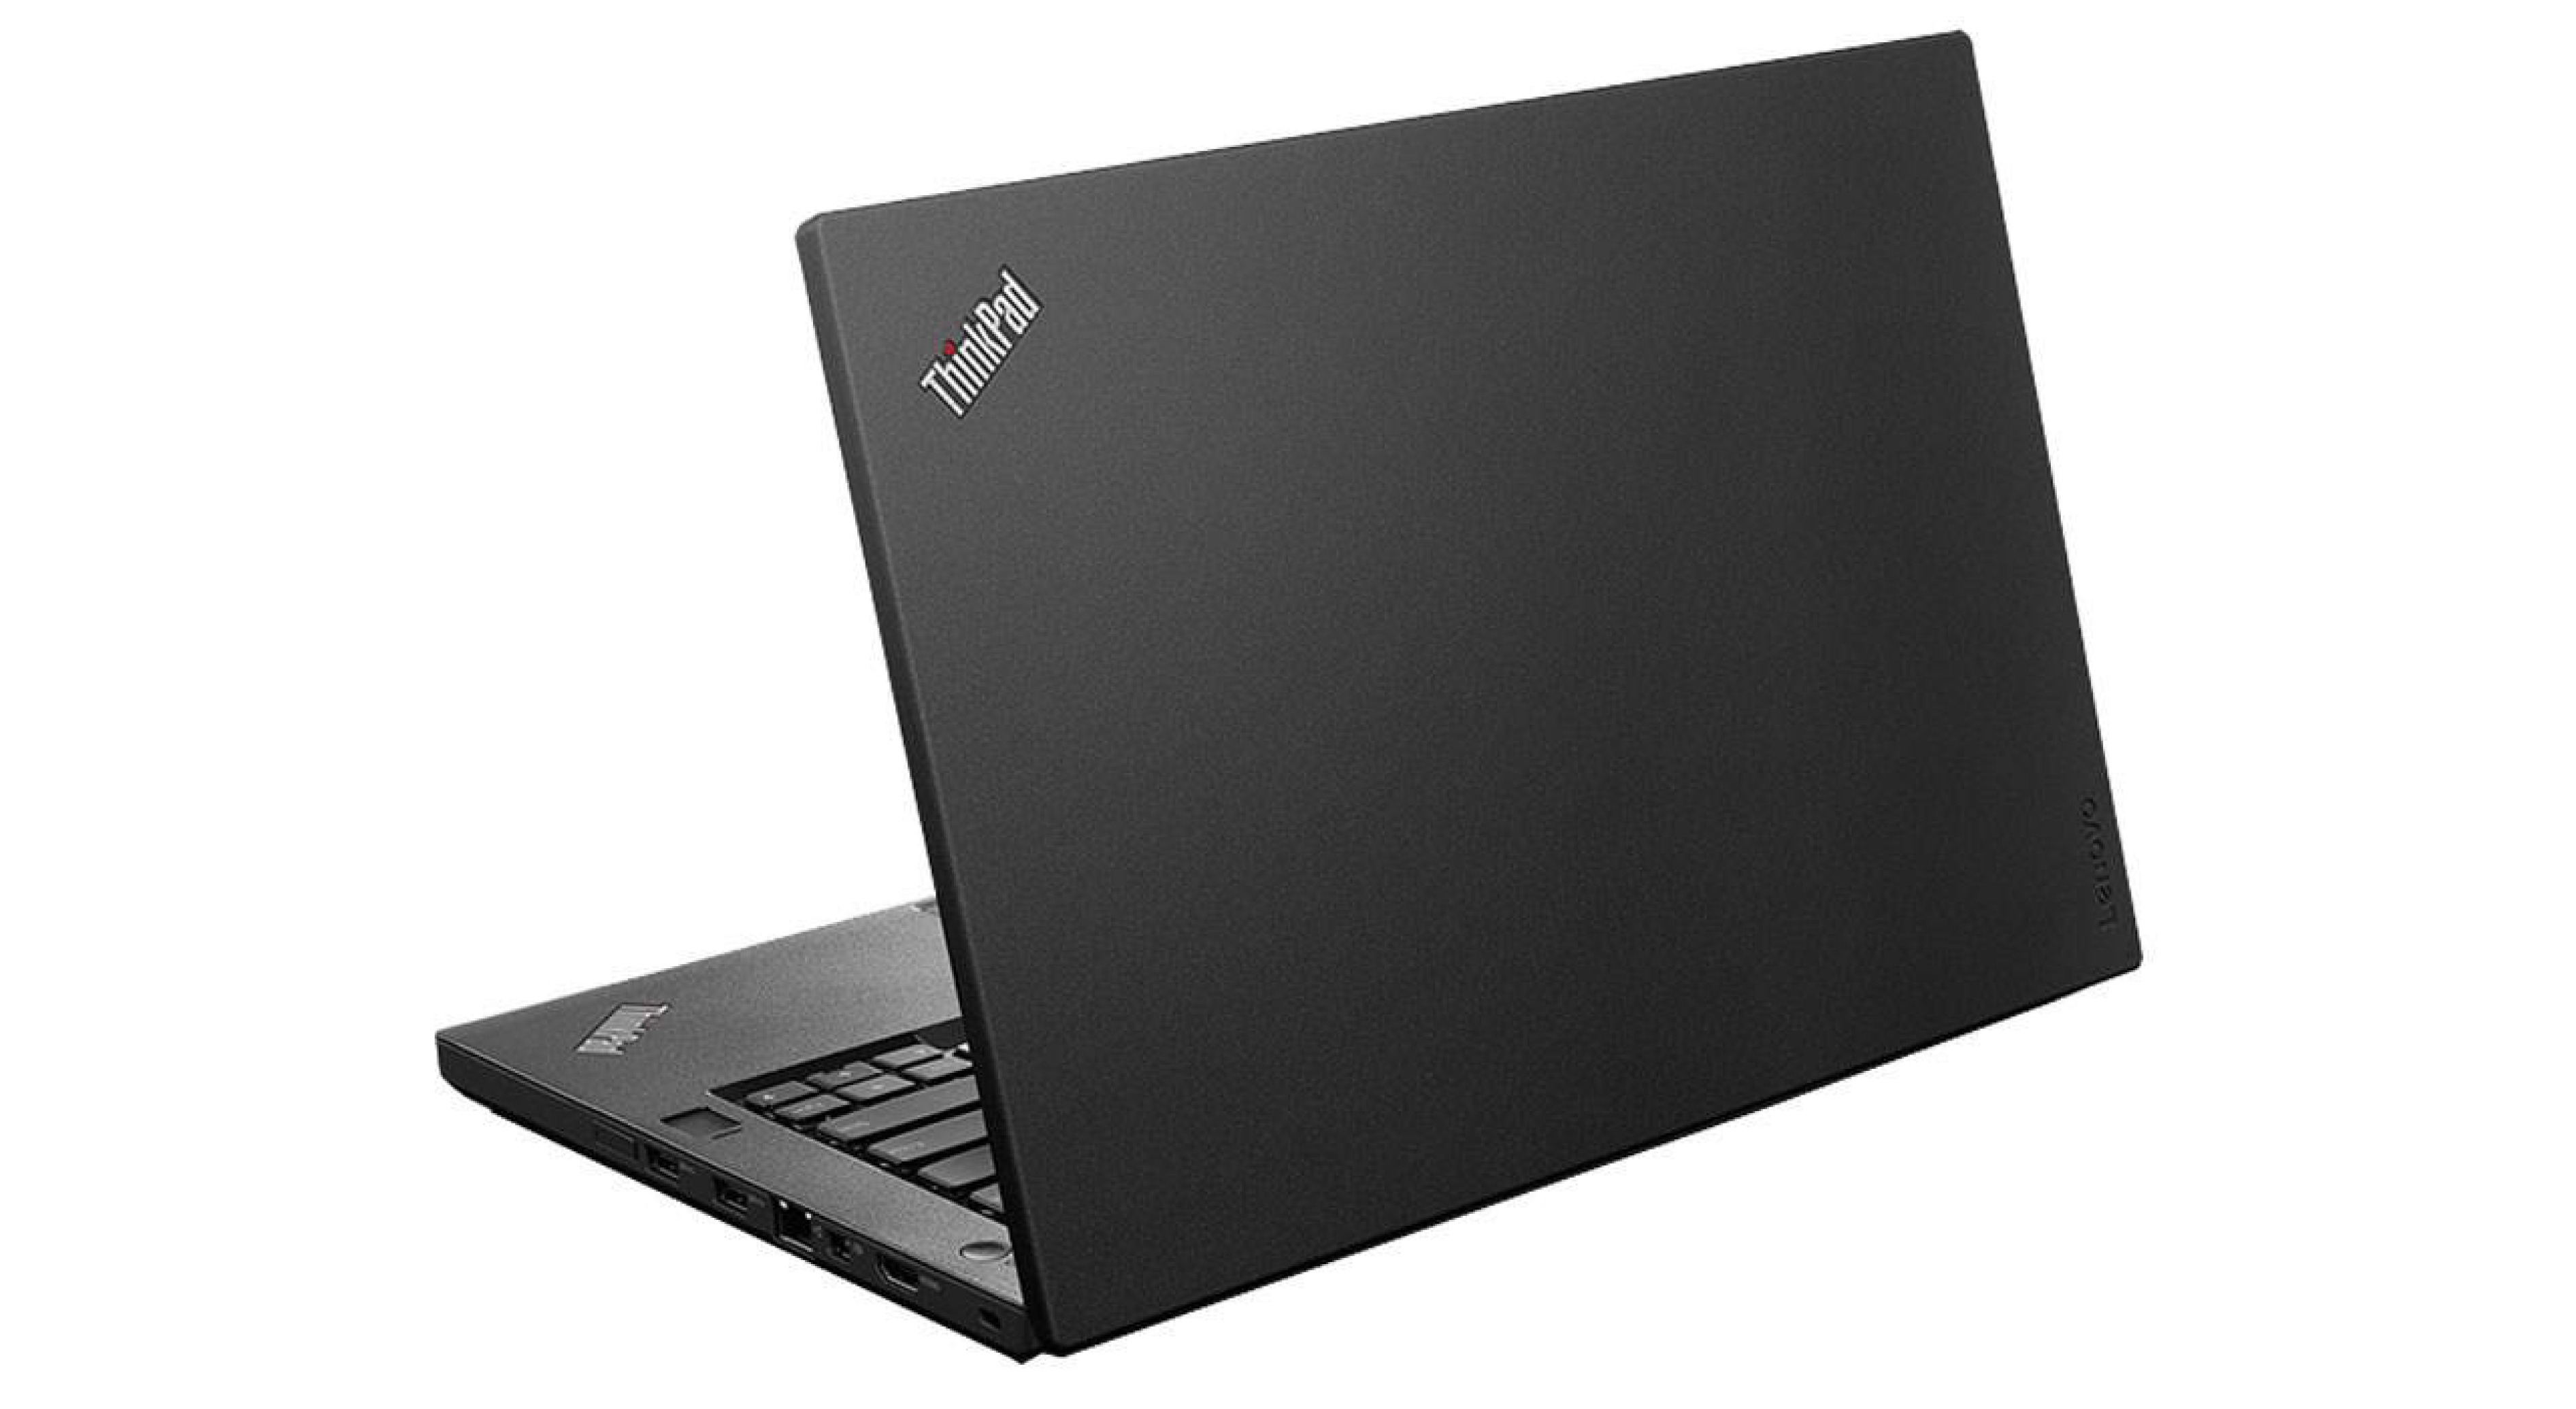  خرید لپ تاپ لنوو تینک پد ThinkPad T460P | خرید قیمت و مشخصات لپ تاپ Lenovo ThinkPad T460P | لپ تاپ Lenovo ThinkPad T460P 